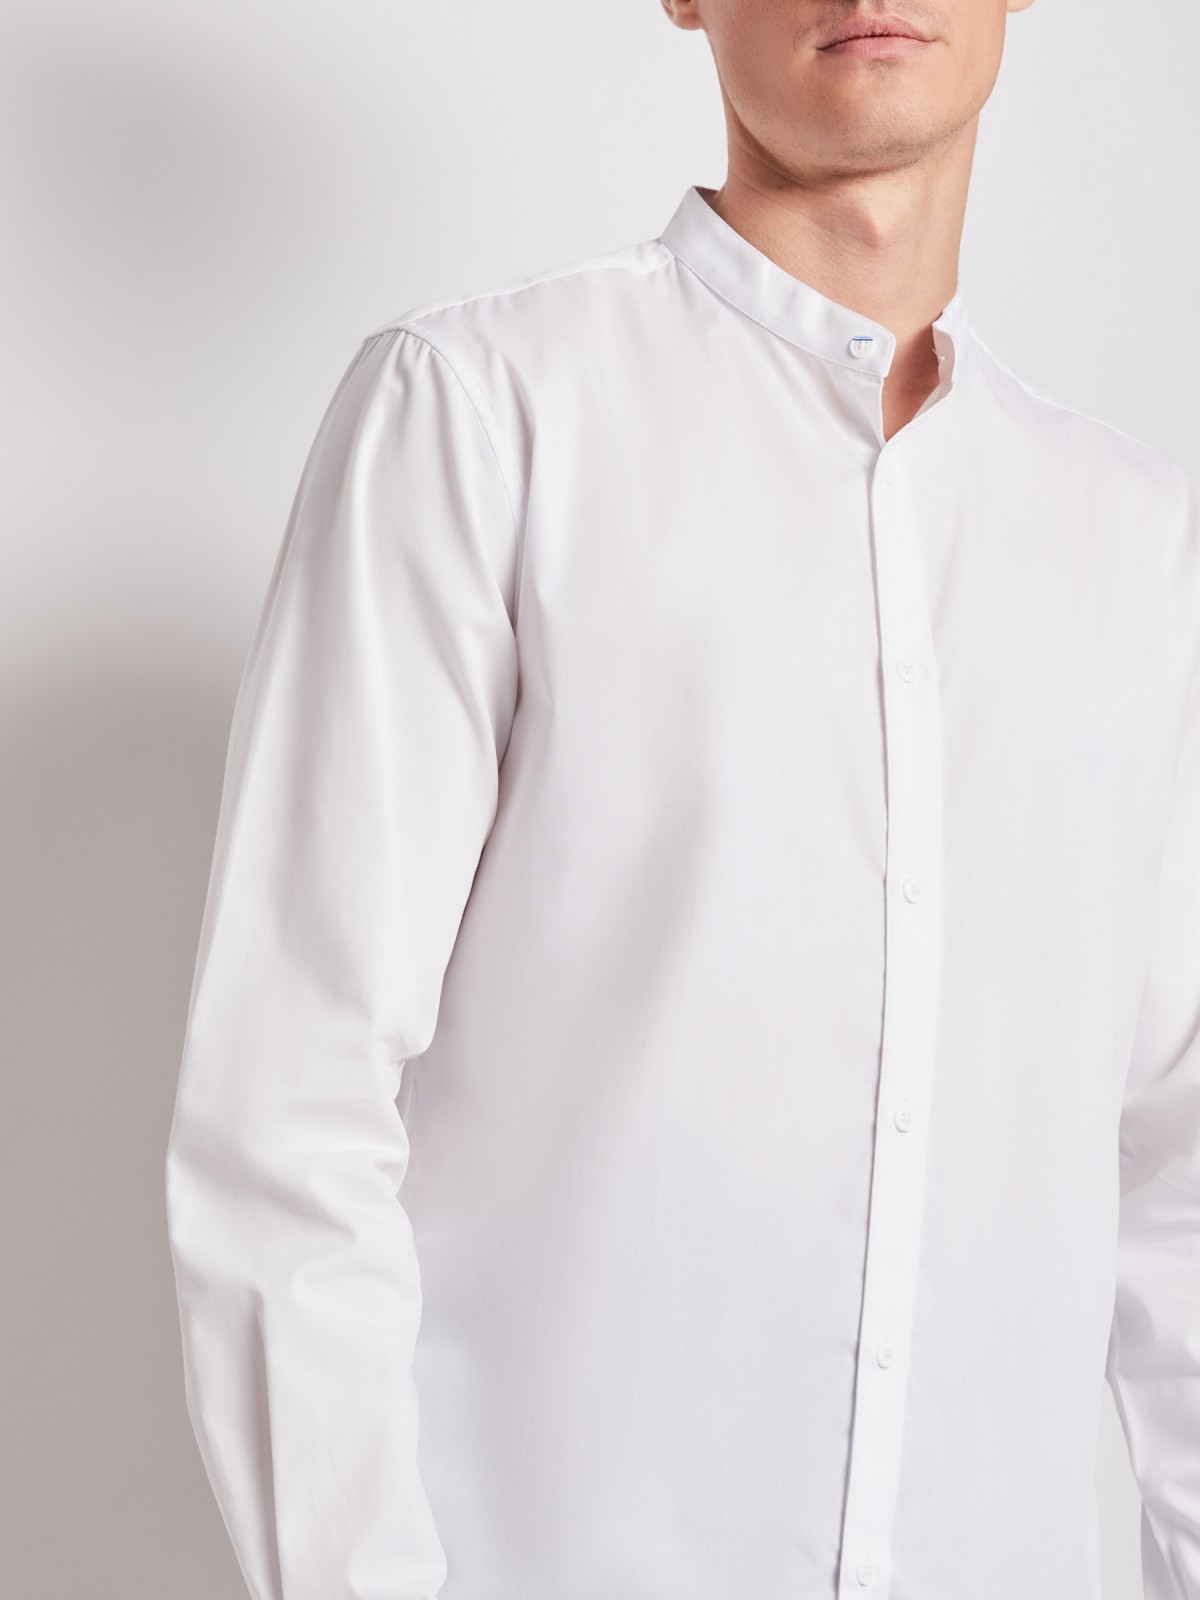 Рубашка с воротником-стойкой zolla 212112159012, цвет белый, размер S - фото 5